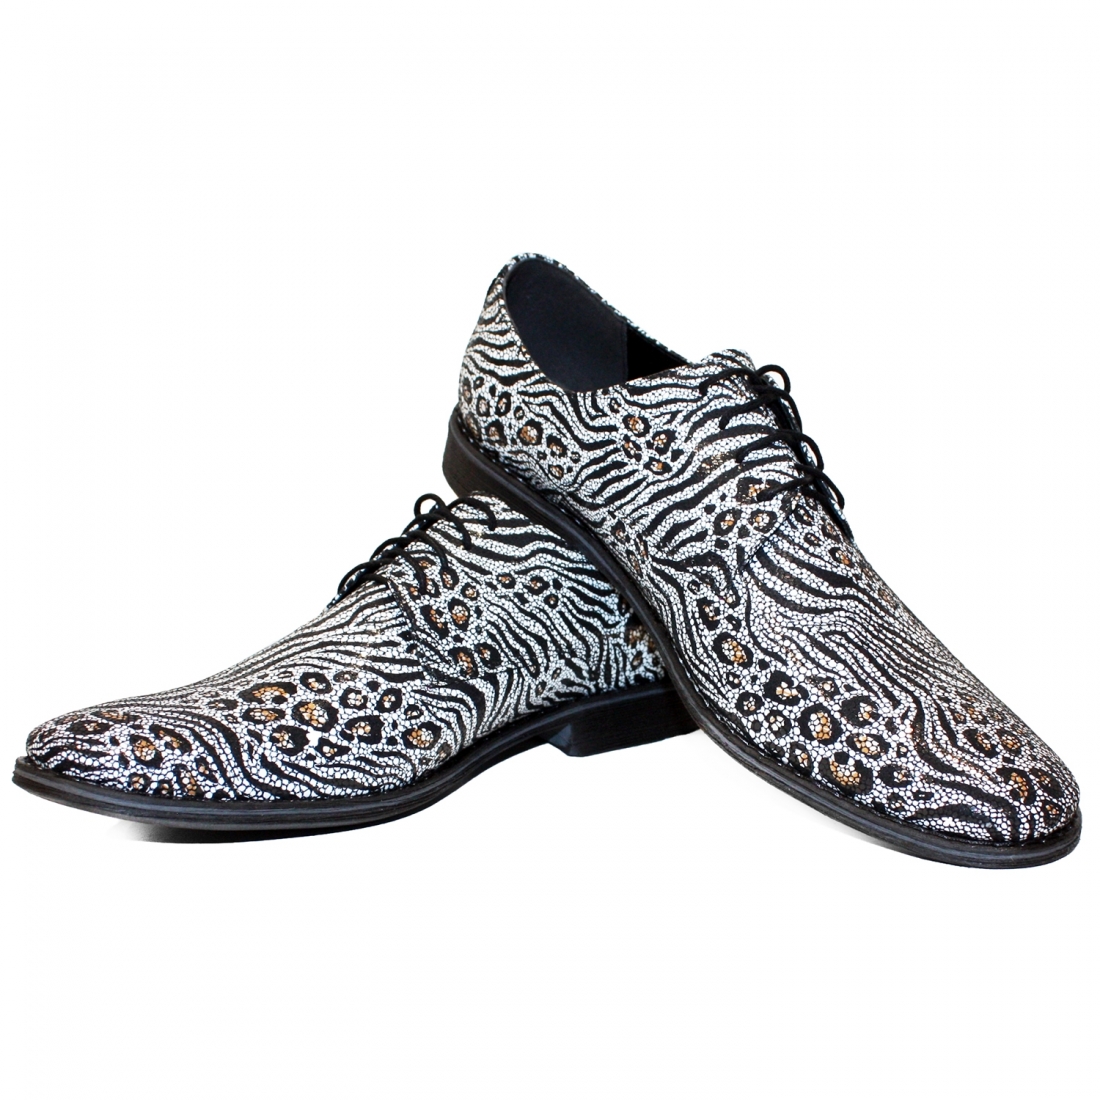 Modello Zeberro - Scarpe Classiche - Handmade Colorful Italian Leather Shoes